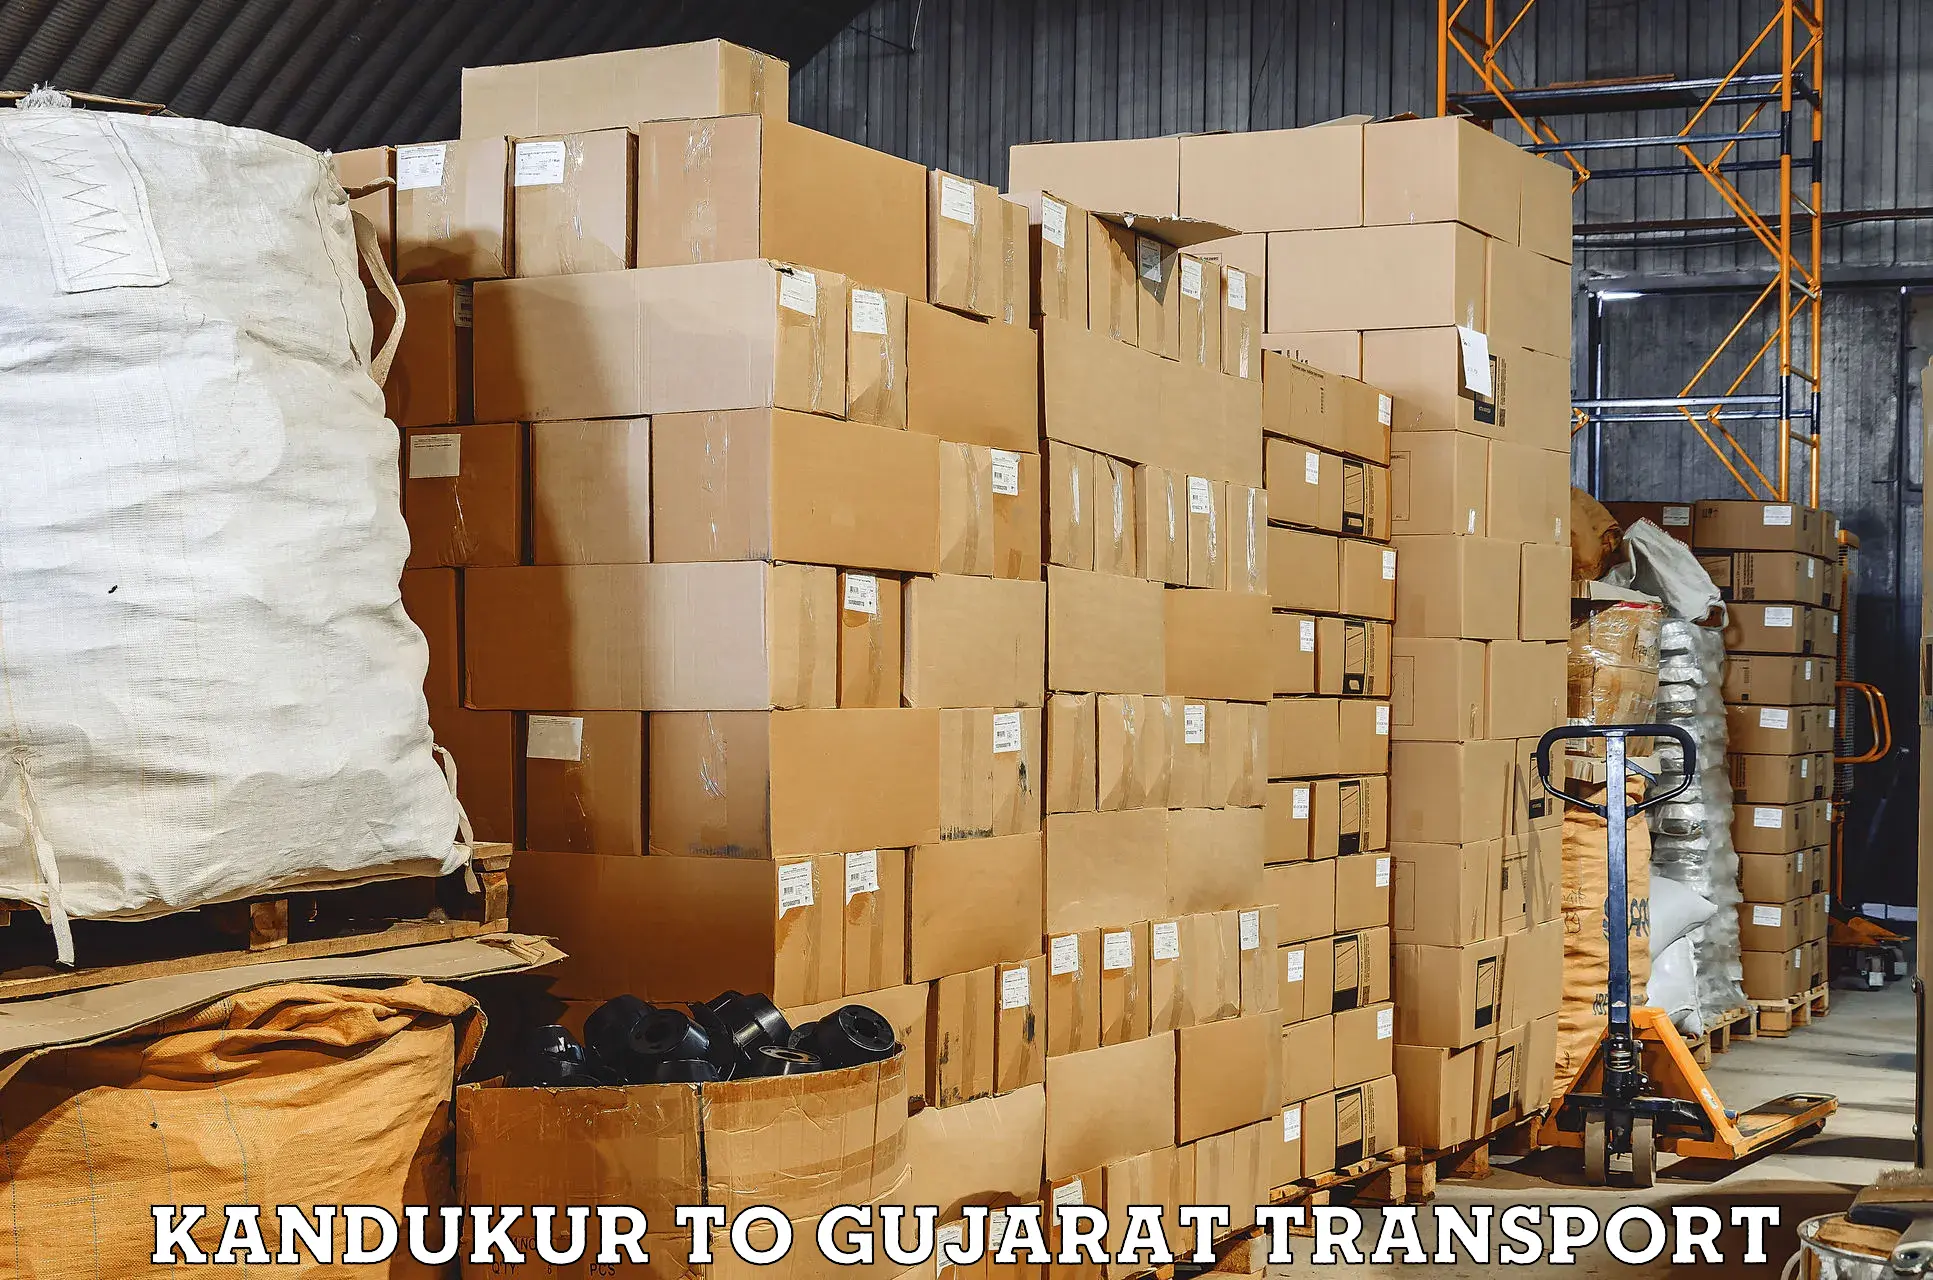 Transport in sharing Kandukur to Junagadh